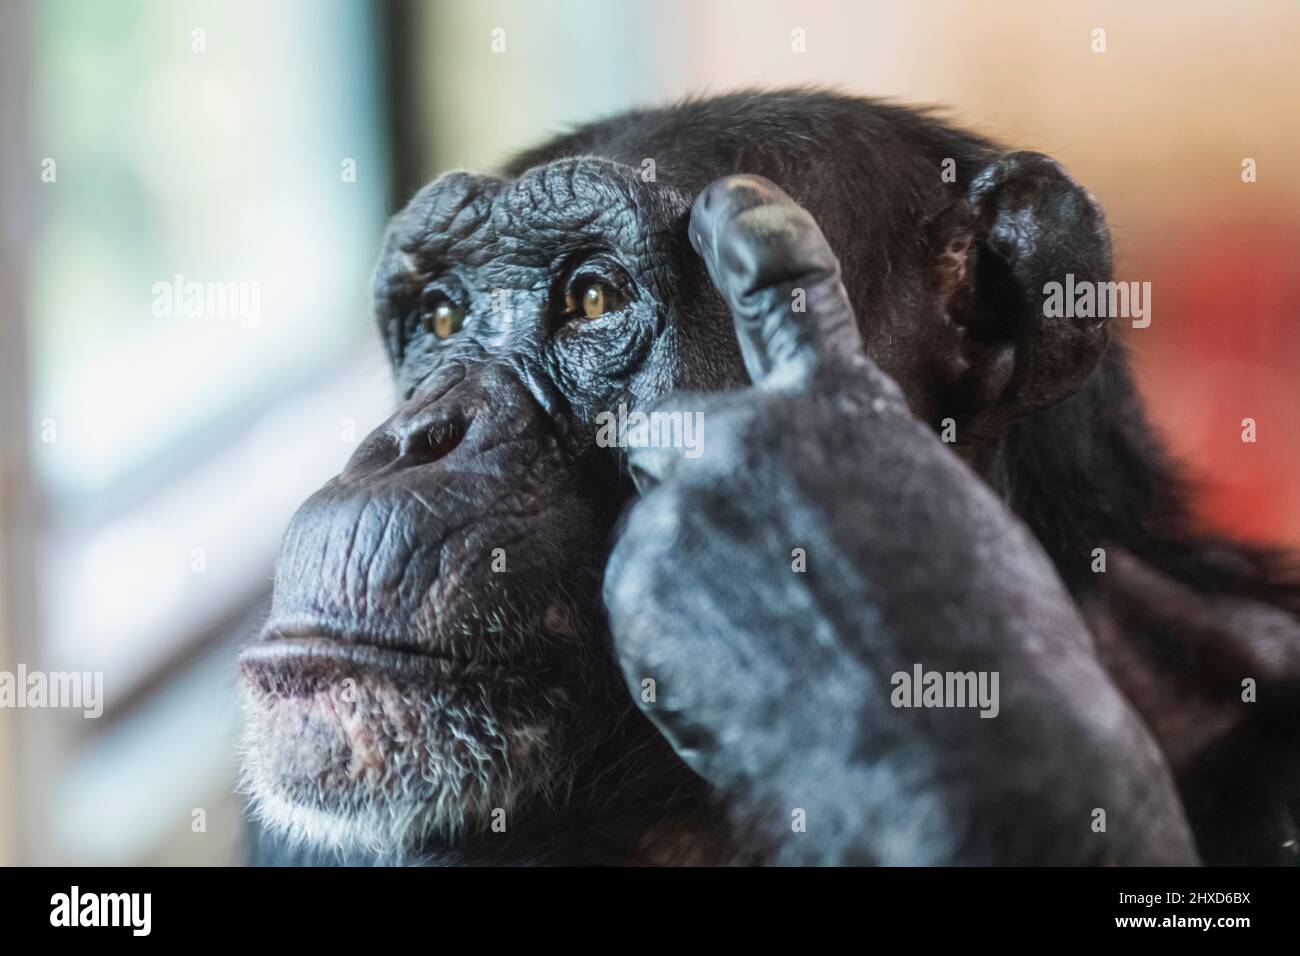 Inghilterra, Dorset, Monkey World Attraction, premuroso Chimpanzee contemplare la vita Foto Stock